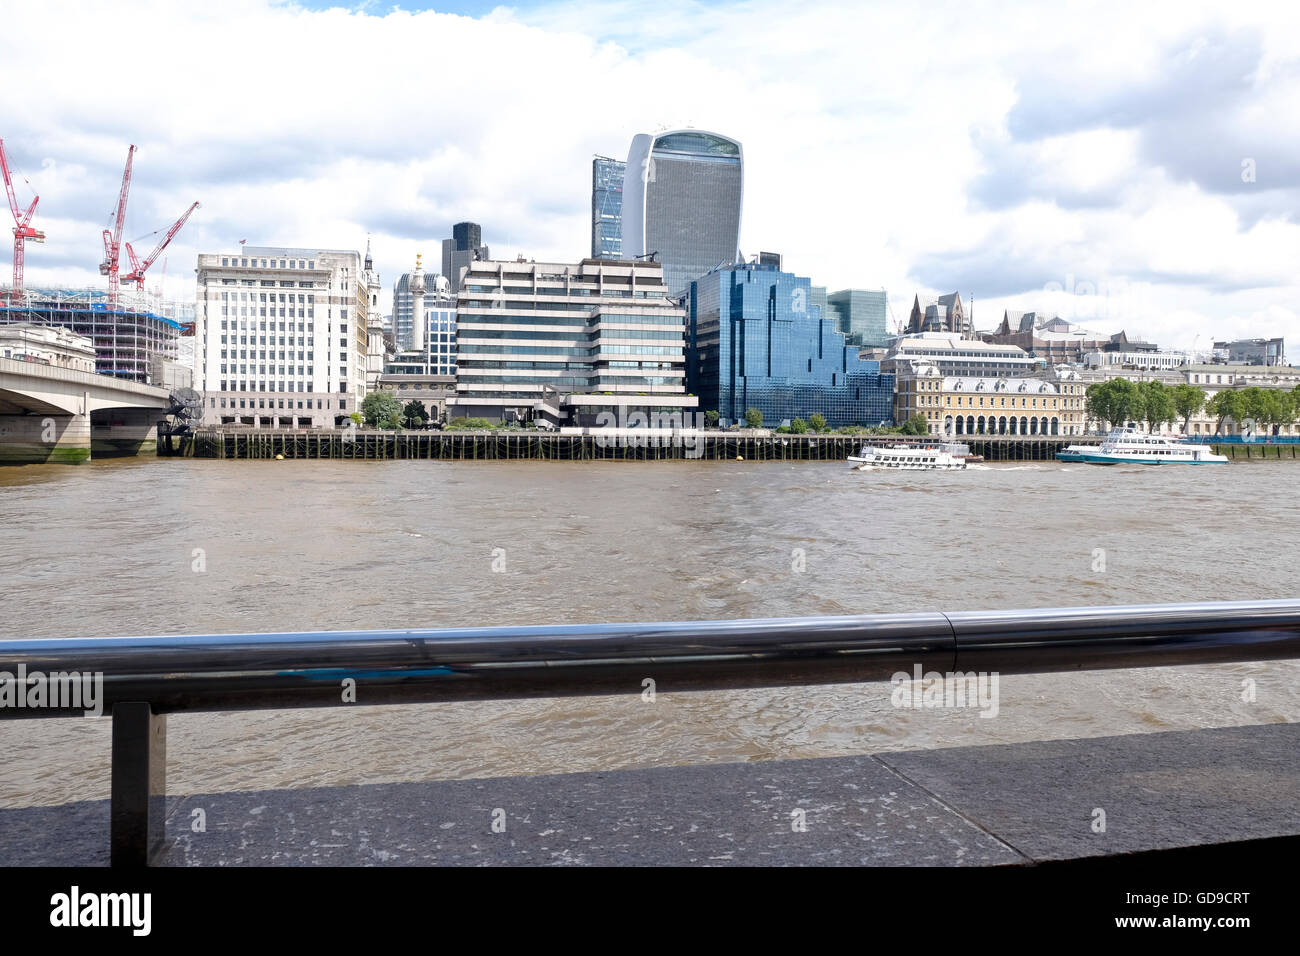 El skyline londinense vistos sobre el río Támesis 20 Fenchurch Street "walkie talkie" de Londres un hito destacado en el fondo Foto de stock